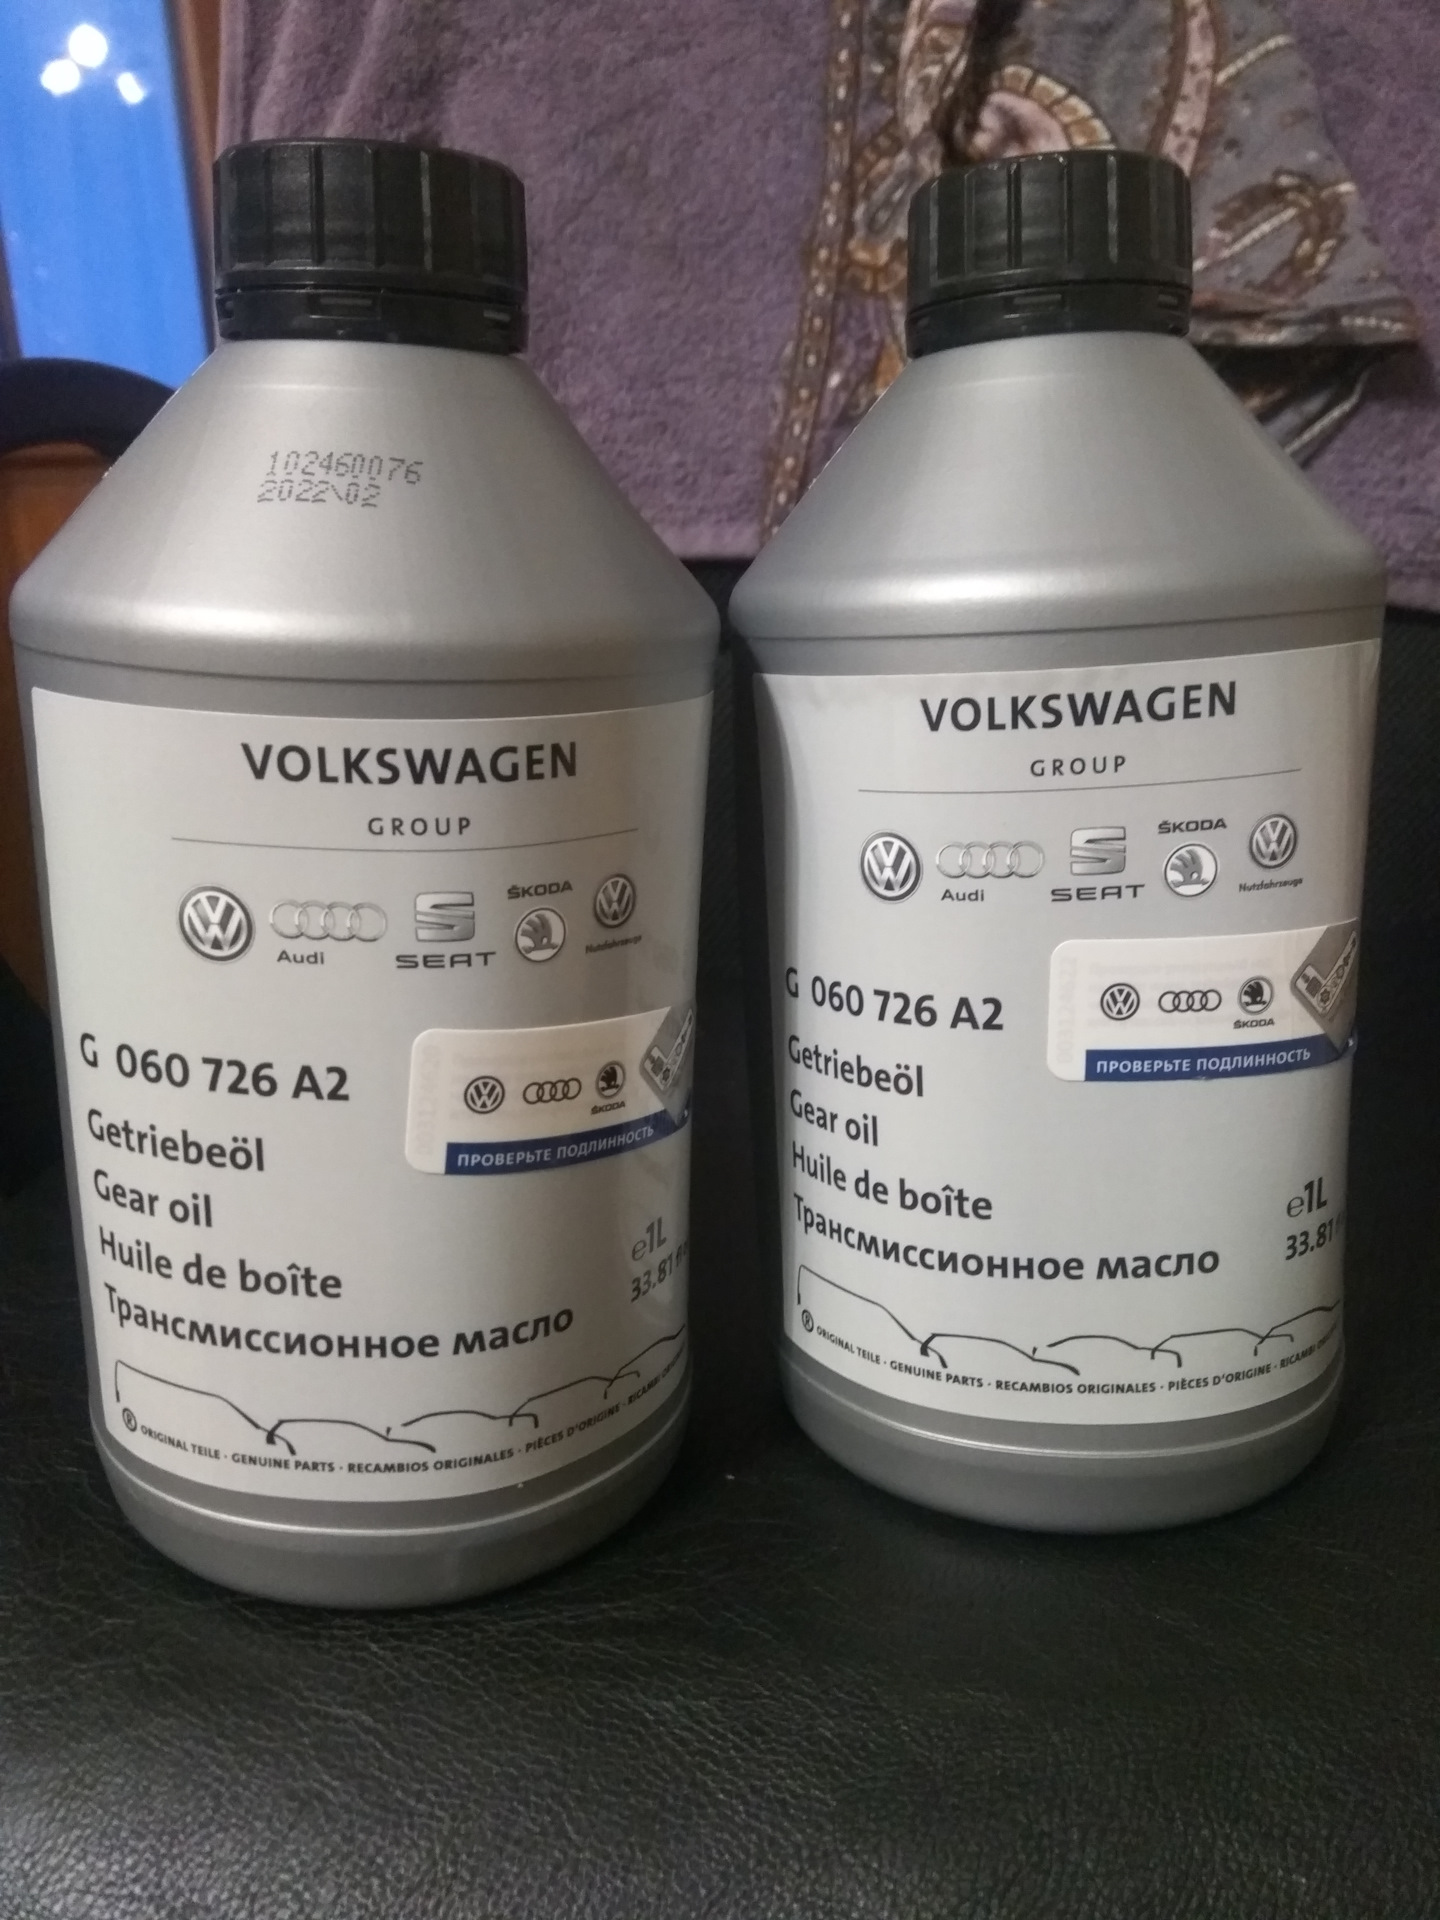 Масло кпп поло седан 1.6. Трансмиссионное масло для Фольксваген поло седан 1.6 механика. Фольксваген поло масло в МКПП седан 1.6. Масло МКПП Фольксваген поло седан 1.6 2016. Volkswagen Polo седан v 1.6 масло в МКПП.